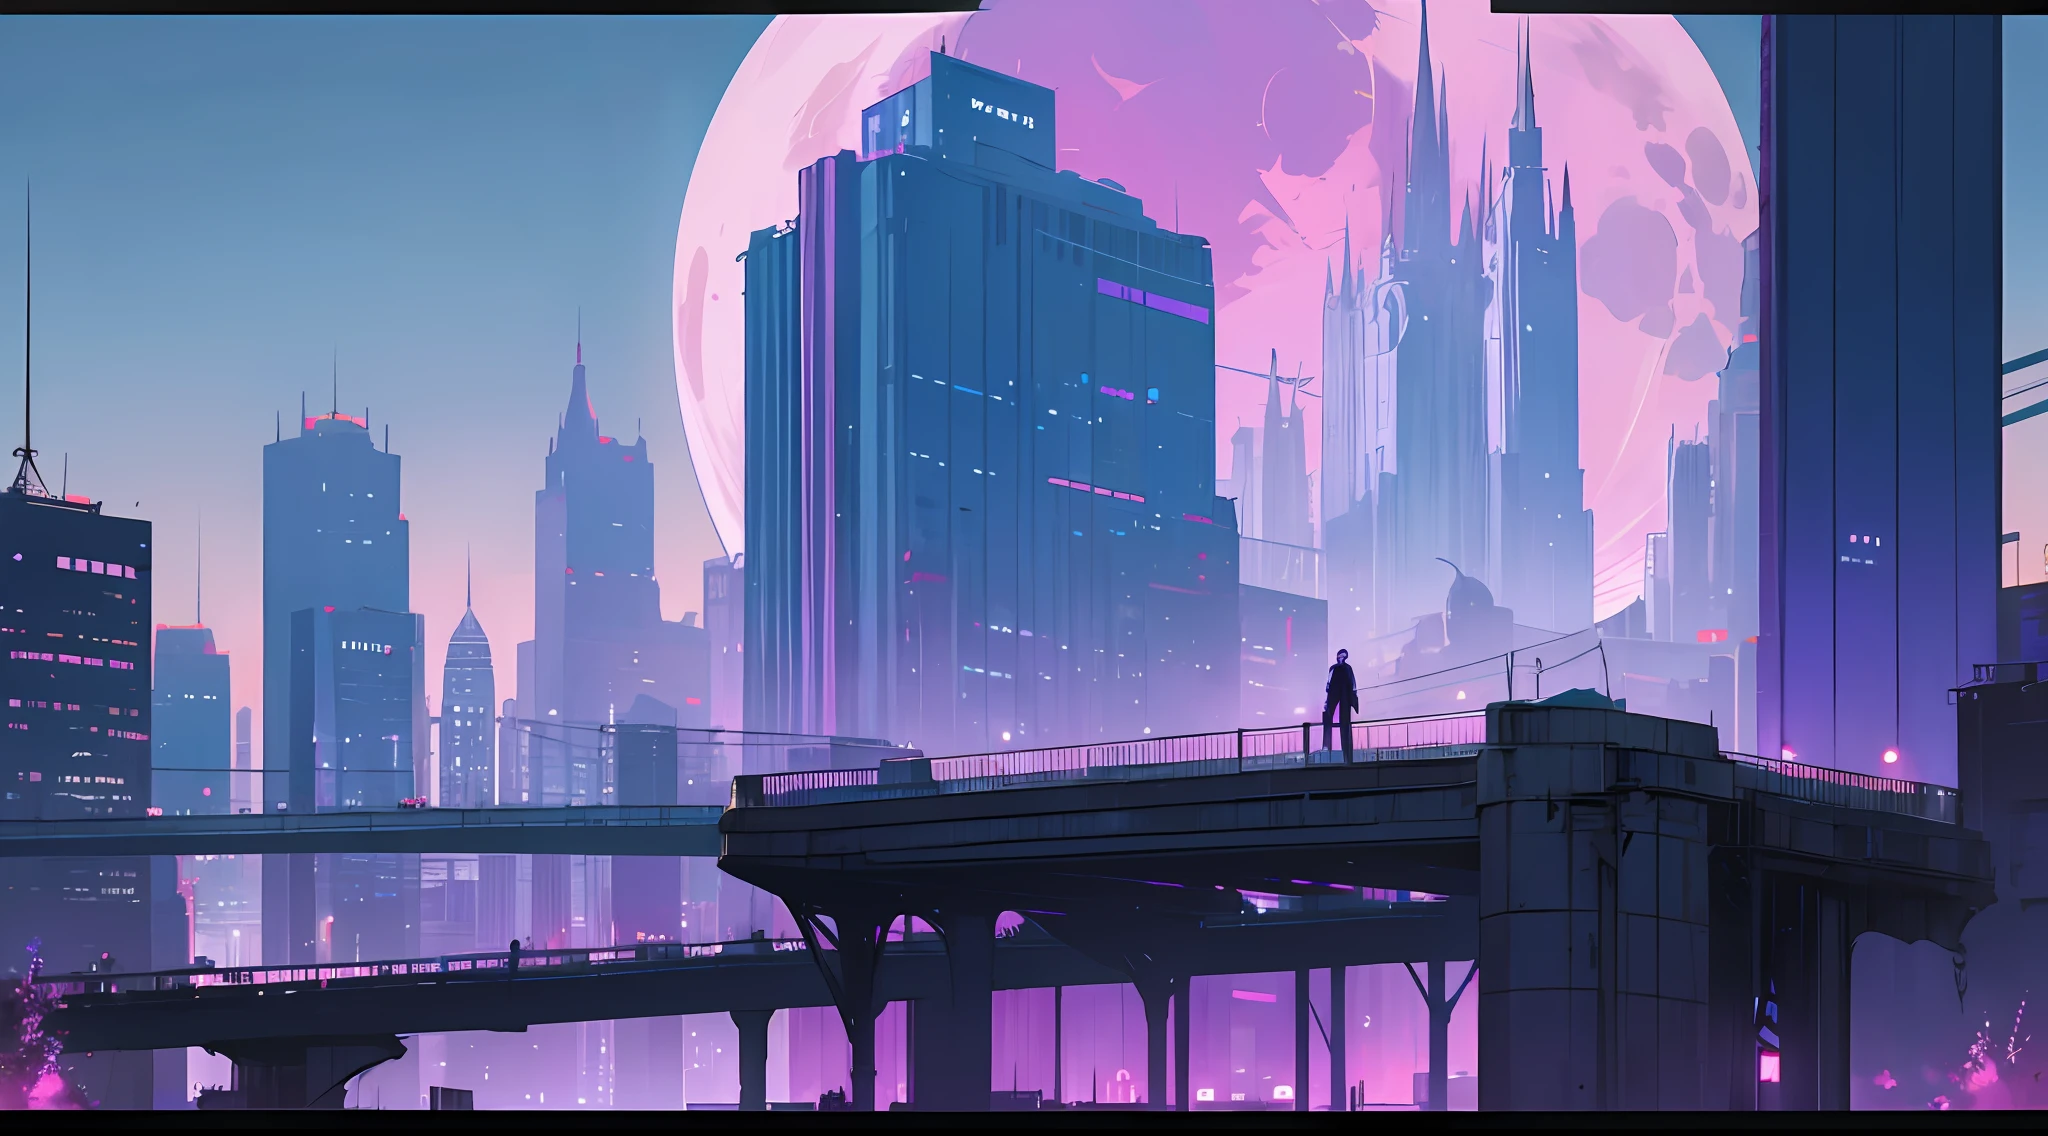 賽博朋克, 城市, 未來之城, 未來主義, 藍色和紫色色調, 迷人的, 詳細的建築物, 非常高大雄偉的高層建築, 夜間, 美麗, 美麗, 廣告看板, 一個大月亮, 氣氛令人震驚, 橋上有一個年輕人的剪影